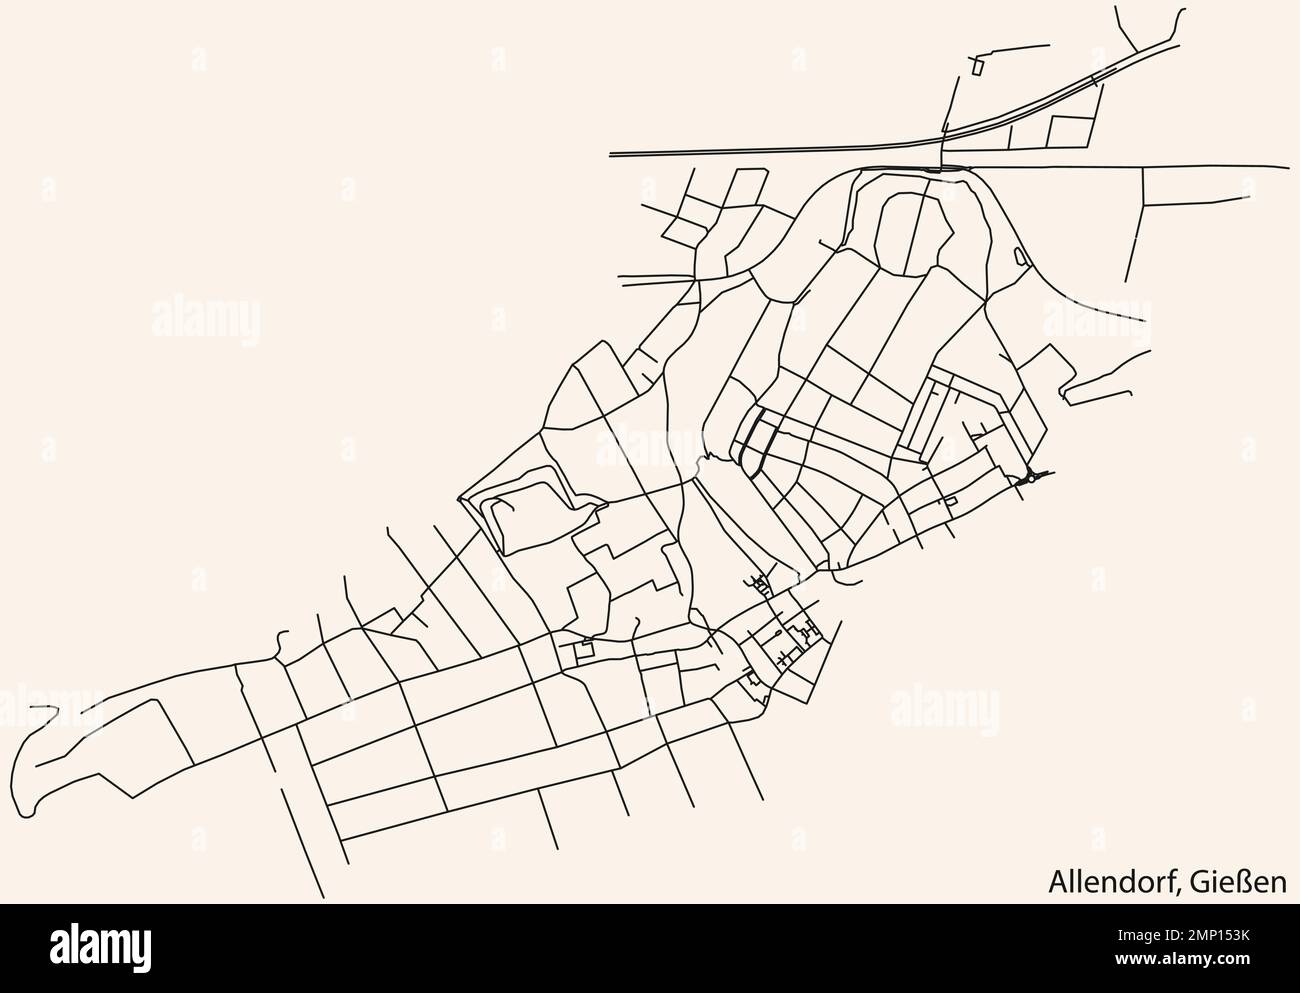 Street roads map of the ALLENDORF DISTRICT, GIESSEN Stock Vector